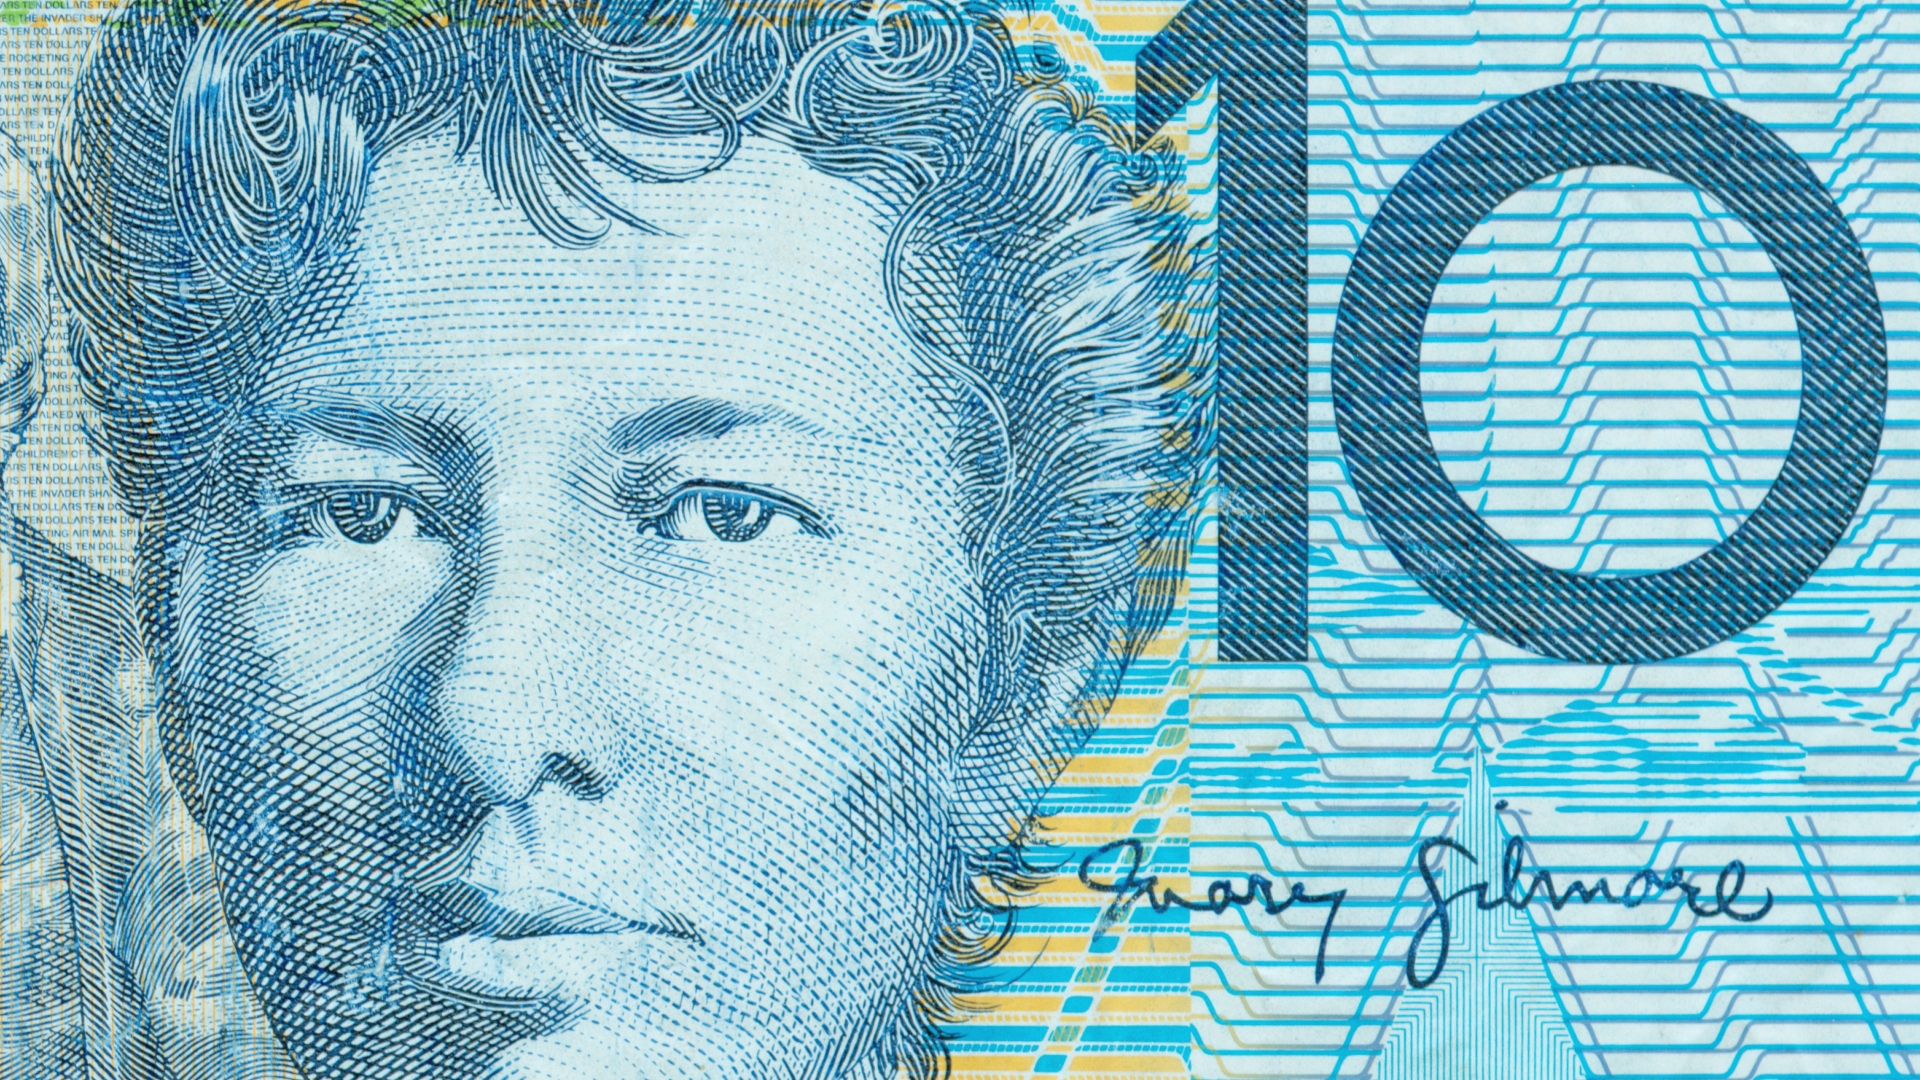 Australian dollars.jpg